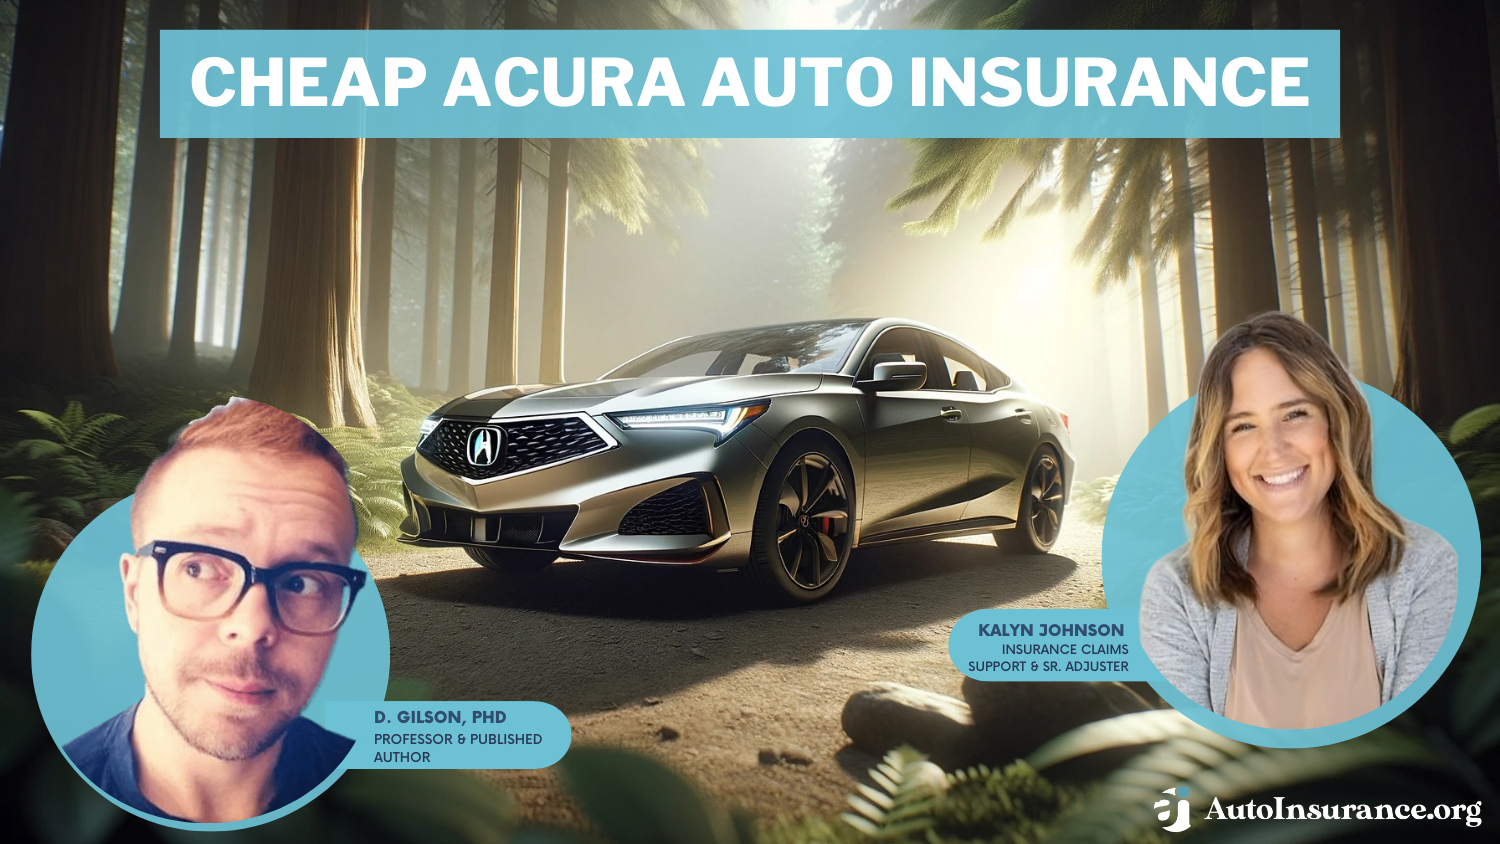 Cheap Acura Auto Insurance: Erie, Geico, AAA